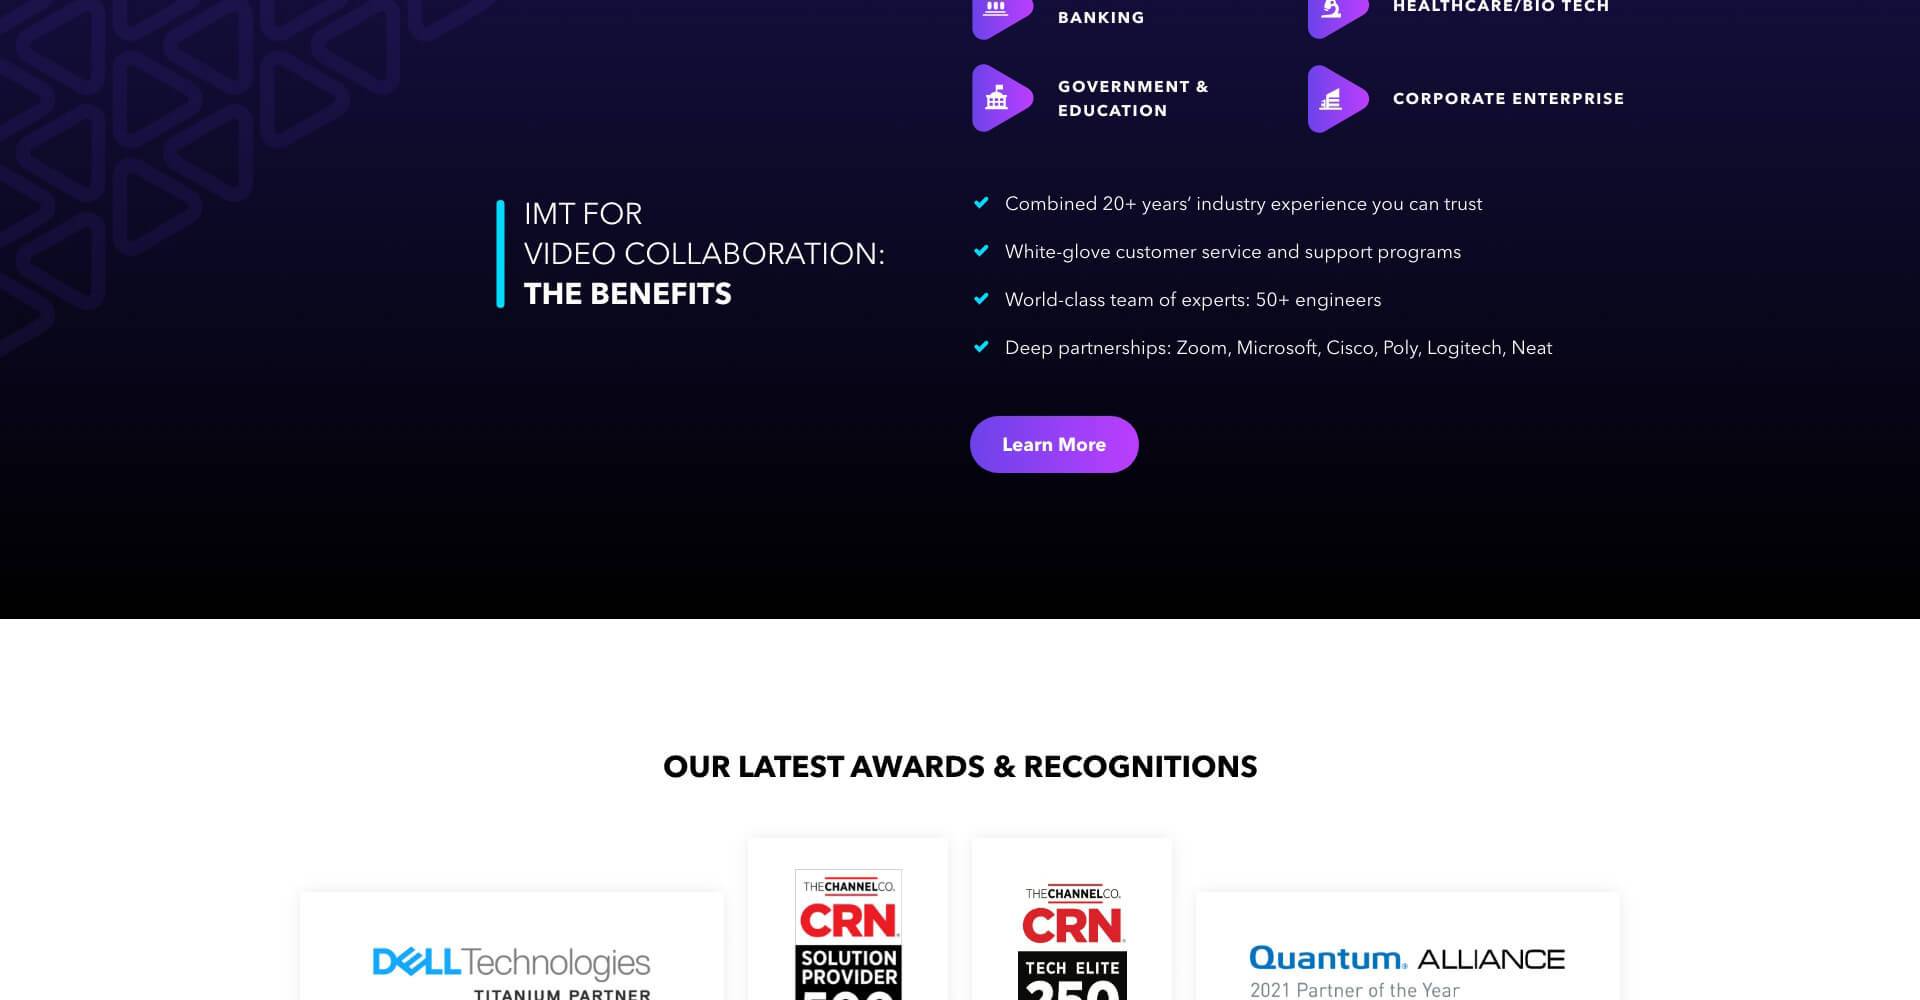 Homepage screenshot of IMT Global